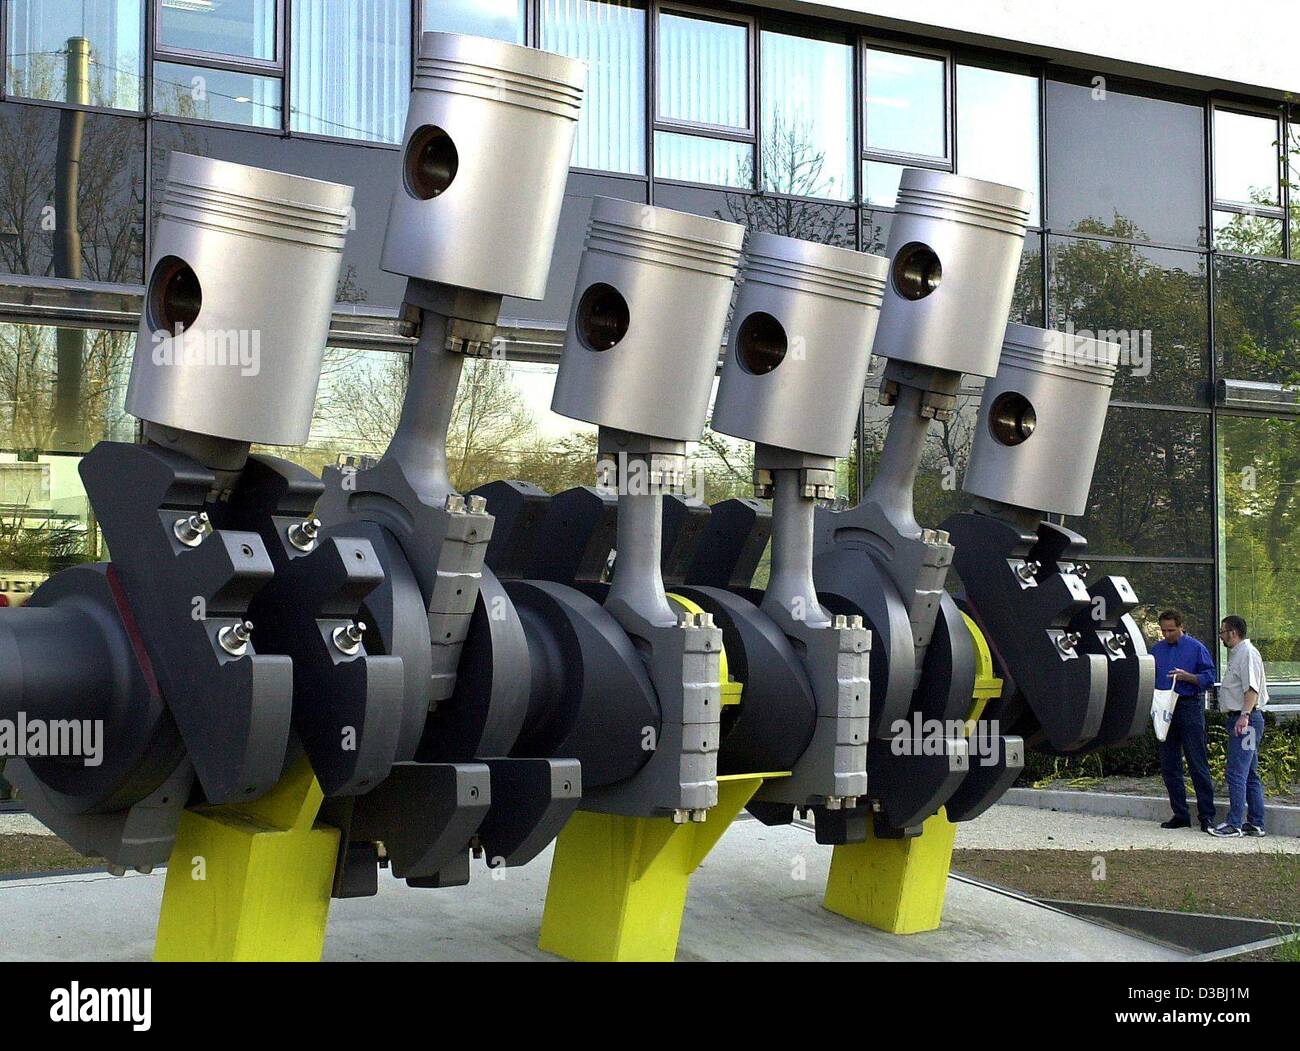 Afp) - Des pistons pour un moteur de voiture se dressent comme une sculpture  en face d'un bâtiment de l'fabricant de pièces automobiles Mahle en  Stuttgart-Bad Cannstatt, Allemagne, 16 avril 2003. Le